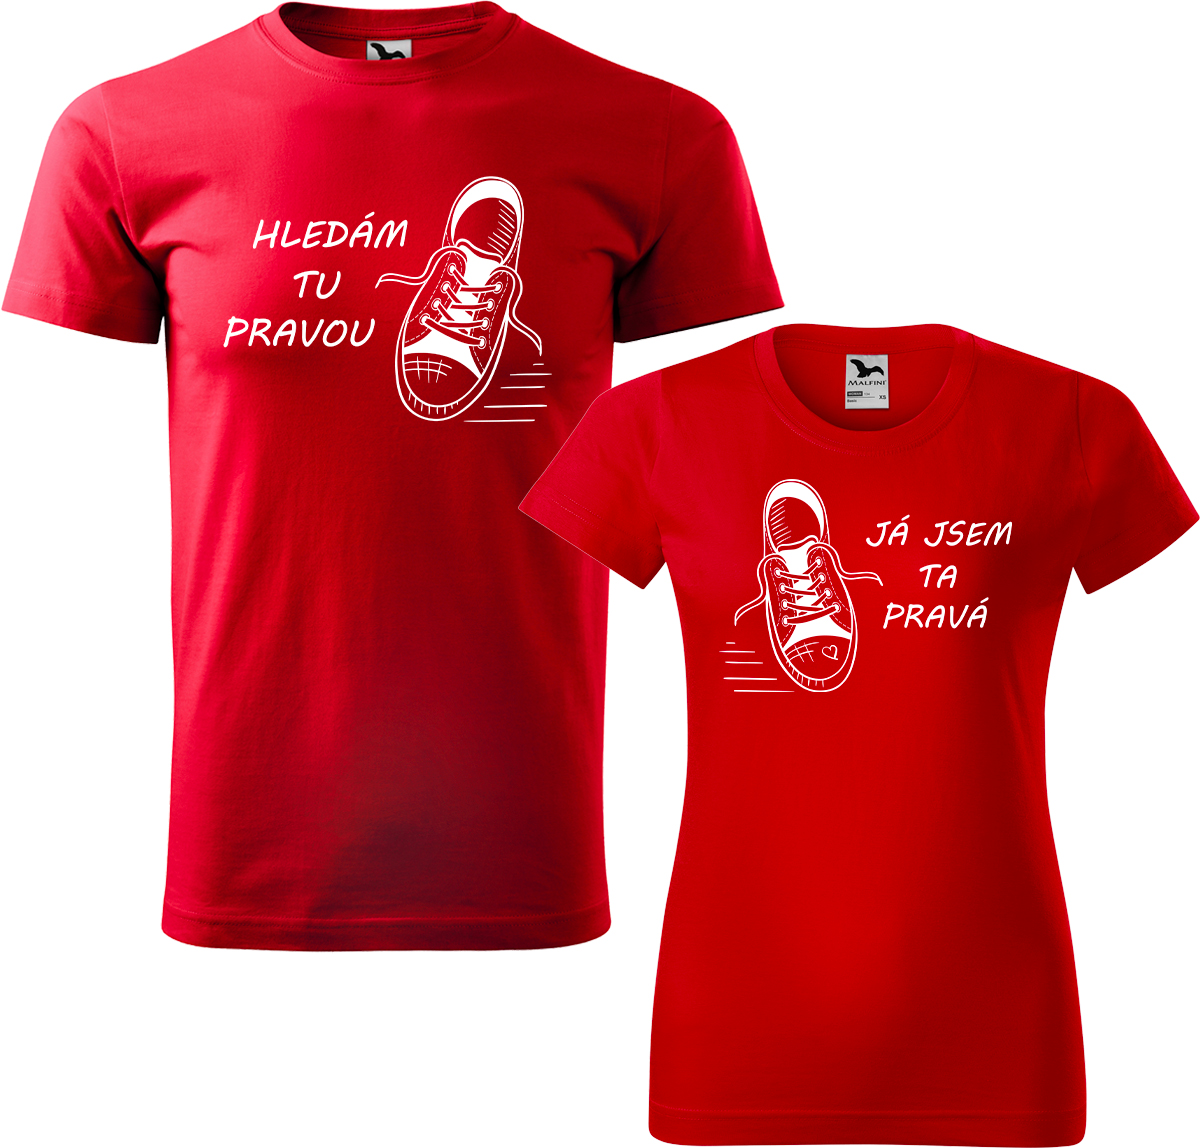 Trička pro páry - Kecky Barva: Červená (07), Velikost dámské tričko: XL, Velikost pánské tričko: XL